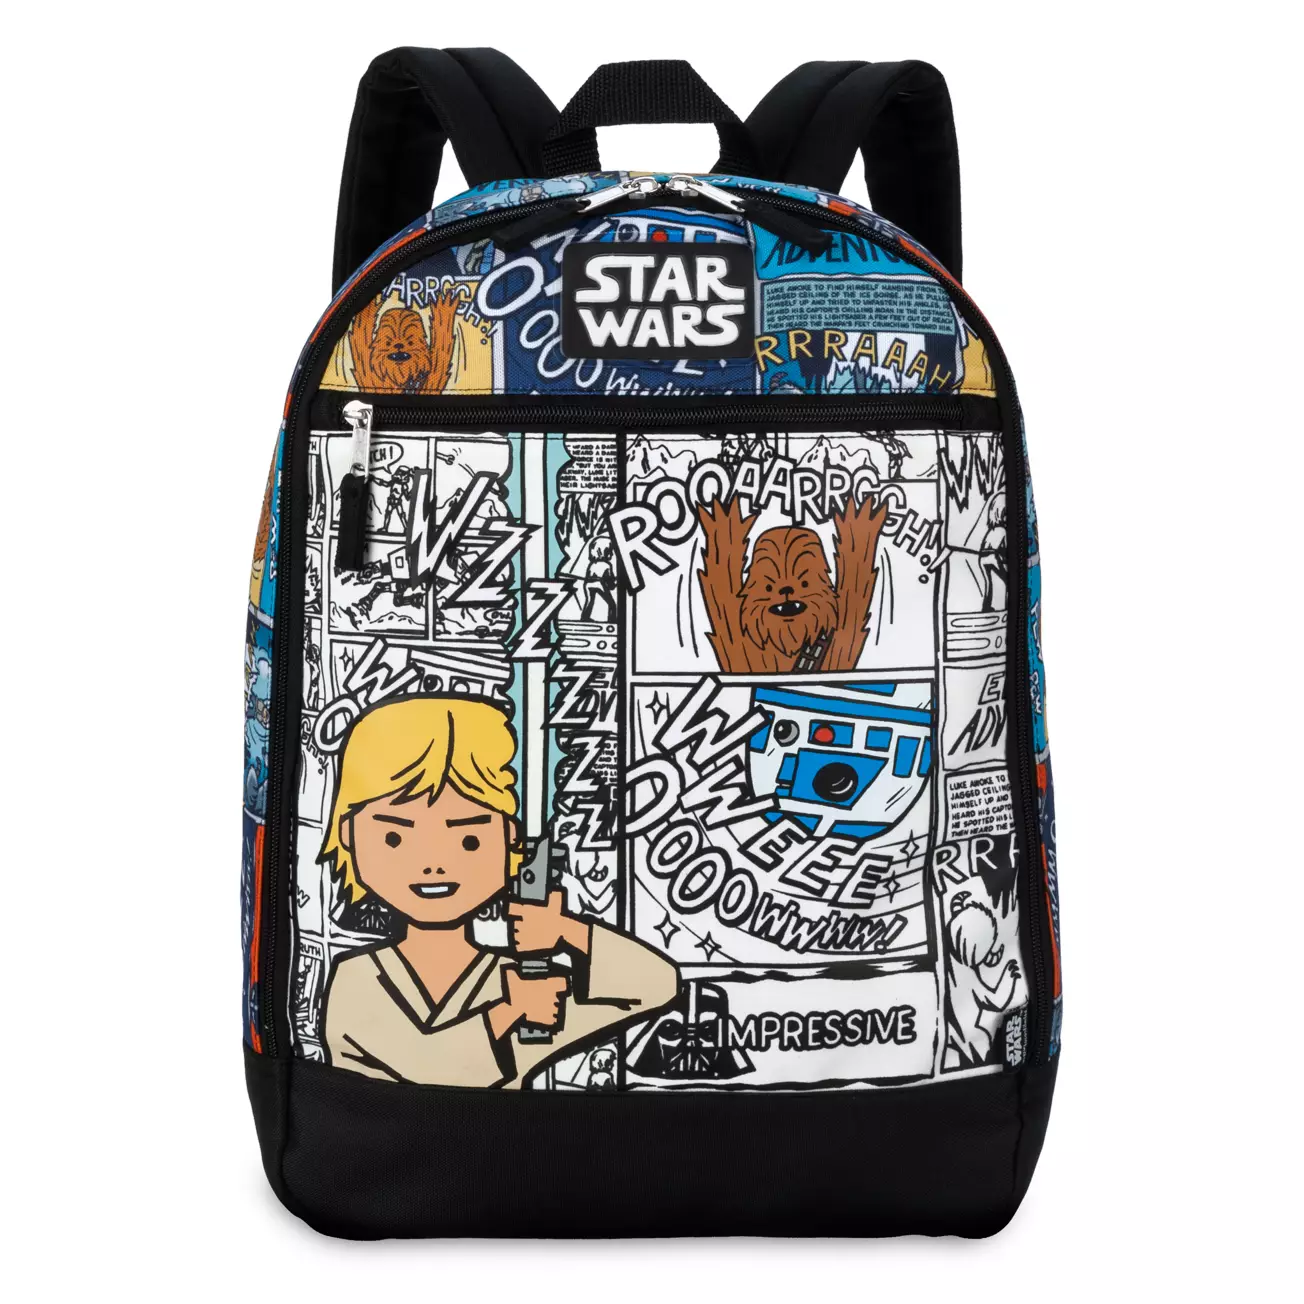  Star Wars Comic Art Backpack